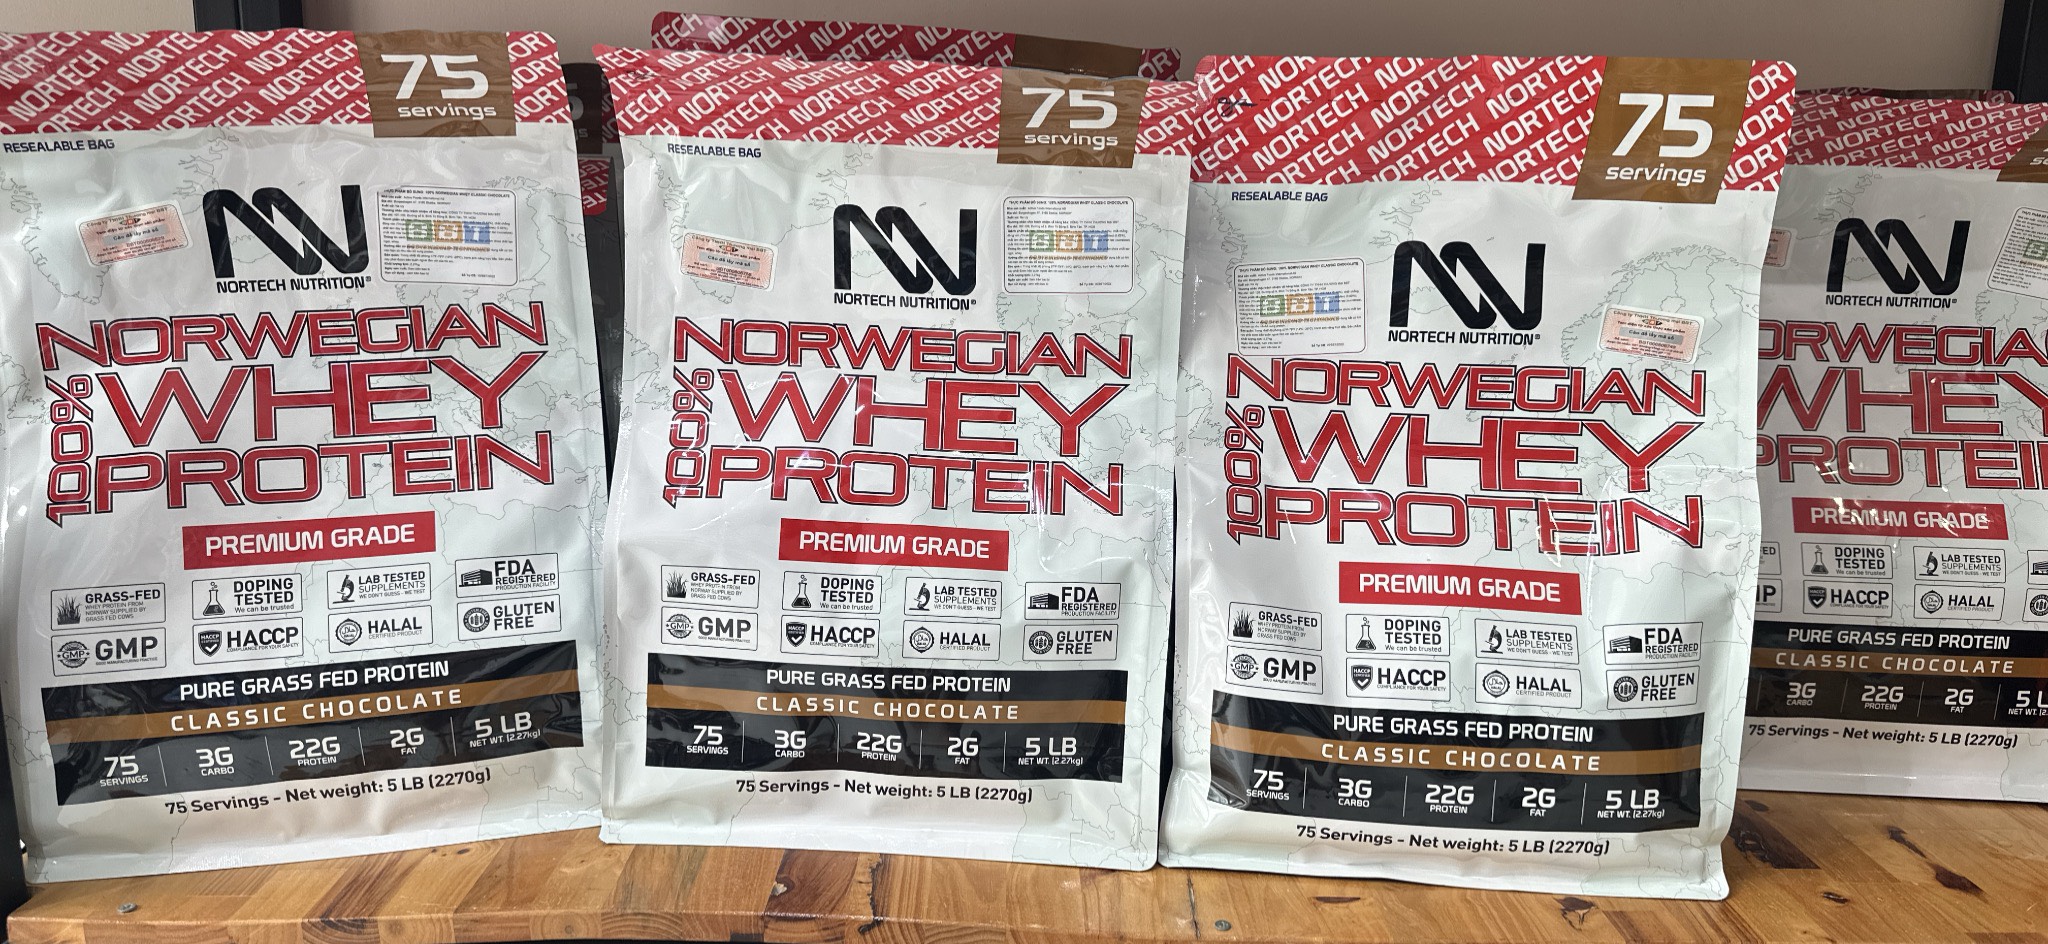 Nortech 100% Norwegian Whey Sữa Hỗ Trợ Tăng Cơ Giảm Mỡ, 22g Protein, Nhập khẩu Na Uy